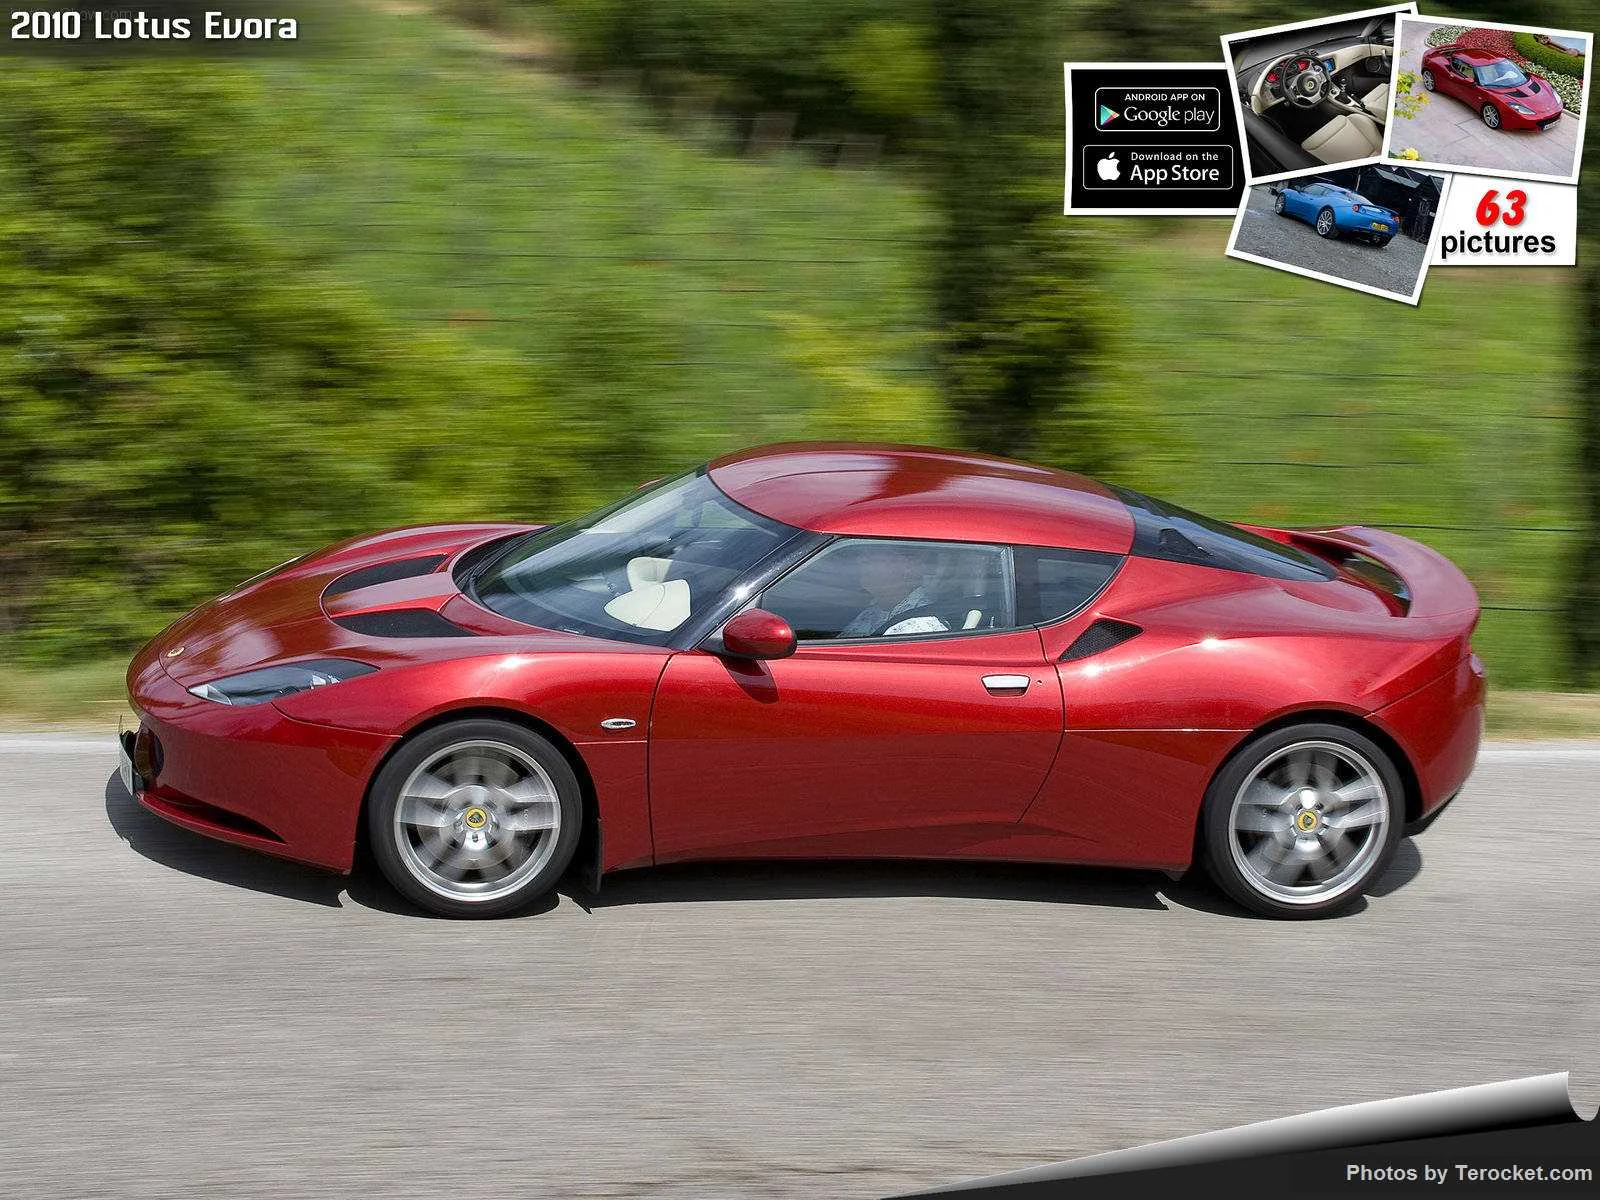 Hình ảnh siêu xe Lotus Evora 2010 & nội ngoại thất